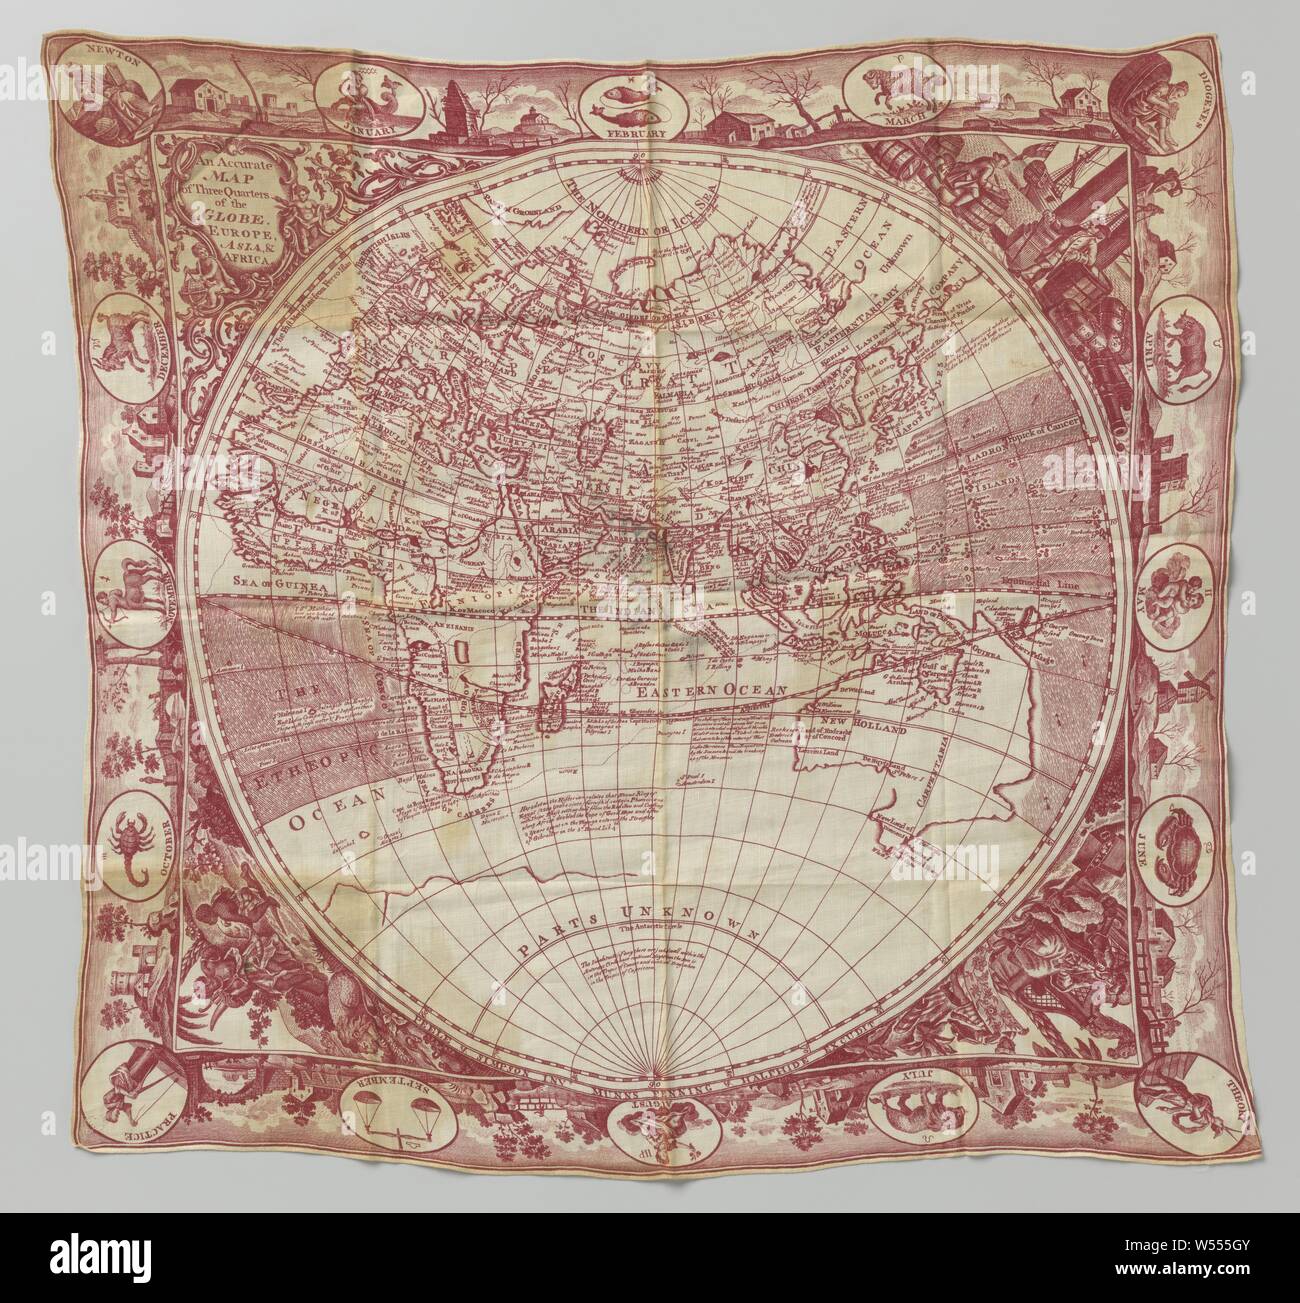 Du linge de maison en tissu imprimé avec la carte du monde et les signes du zodiaque, un chiffon de toile imprimée avec la carte du monde et les signes du zodiaque., Angleterre, 1790 - 1800, , (matériau), h 72,0 cm × w 68,0 cm Banque D'Images